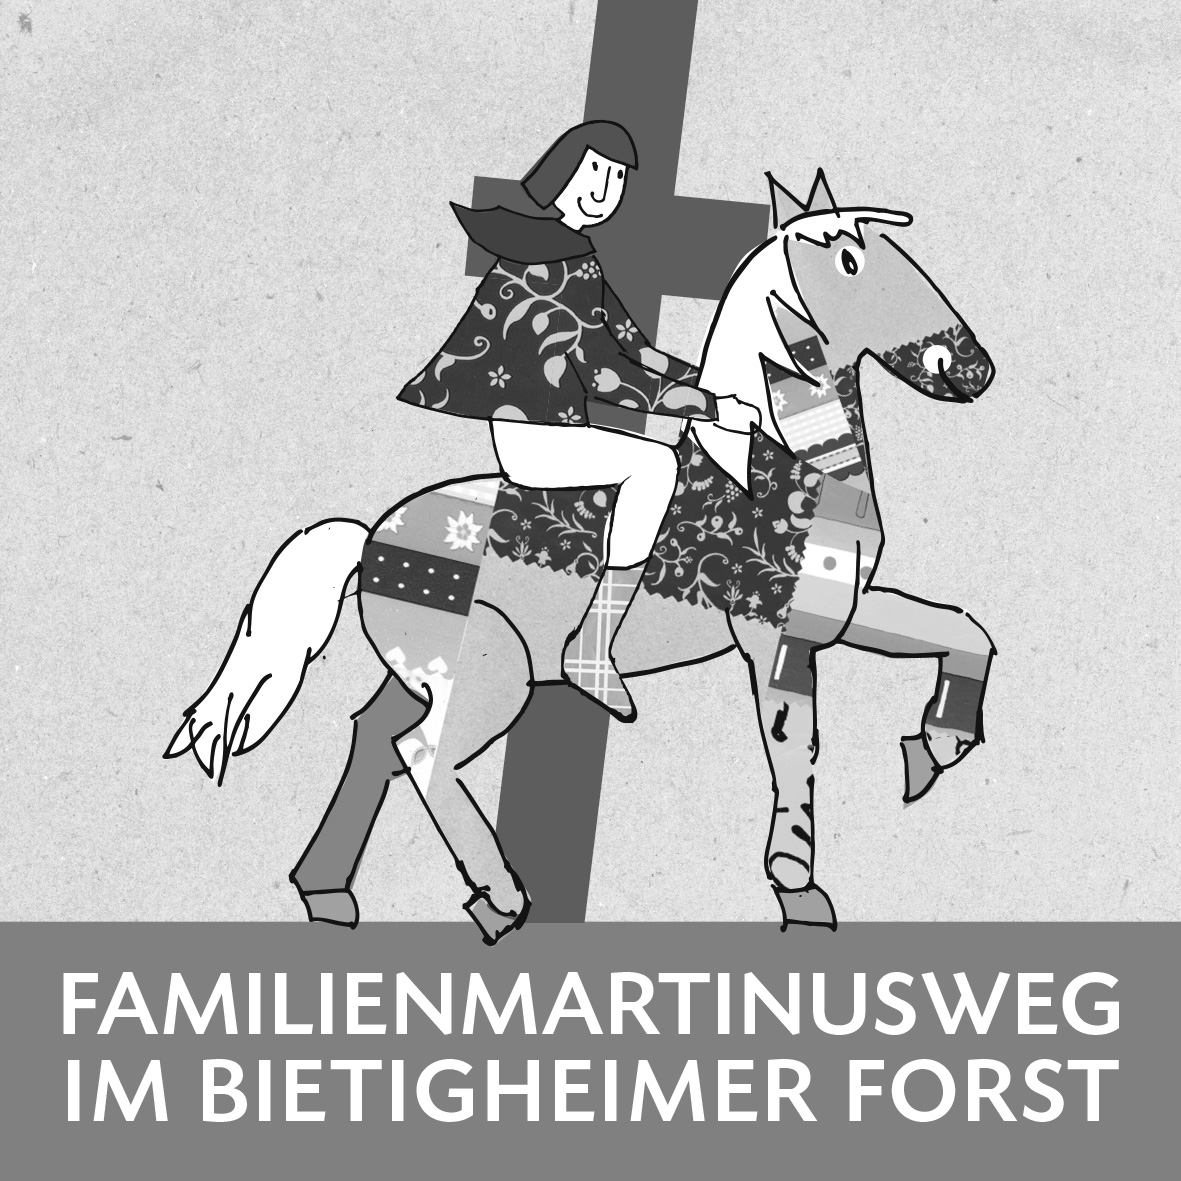 Familien-Martinusweg